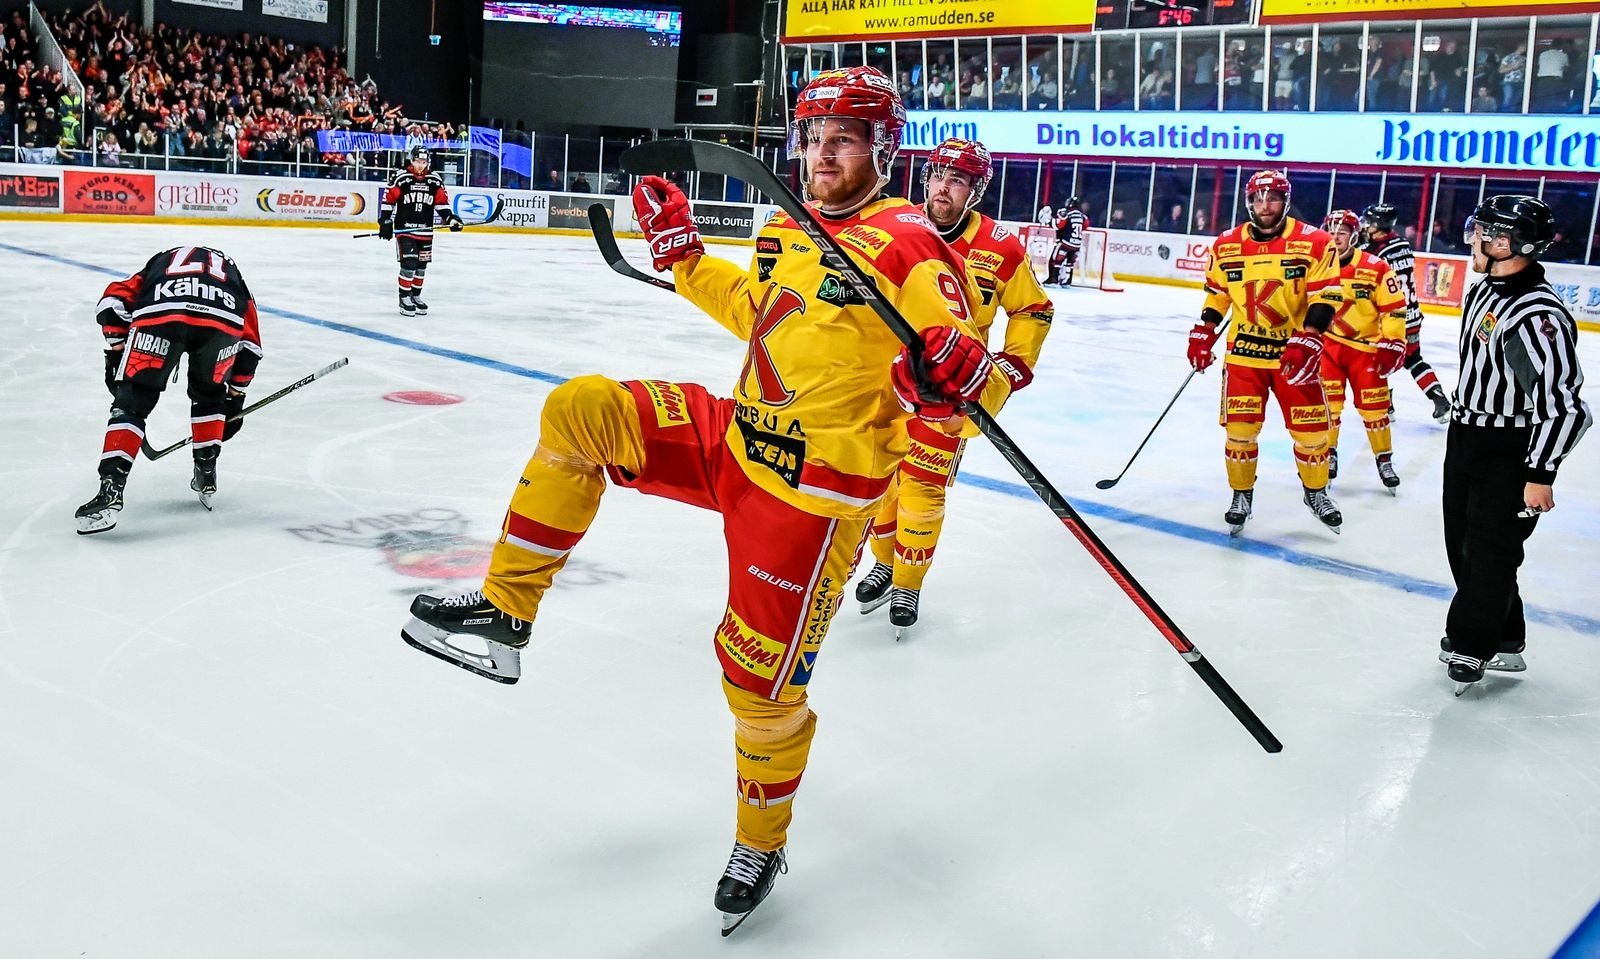 20180915 NYBRO. Nybro Vikings förlorade premiären i Hockeyettan mot Kalmar HC med 2-5.
Nr 90 i Kalmar blev matchvinnare med två mål. Här jublar han efter 2-3 målet.
Foto:SUVAD MRKONJIC
Code10042